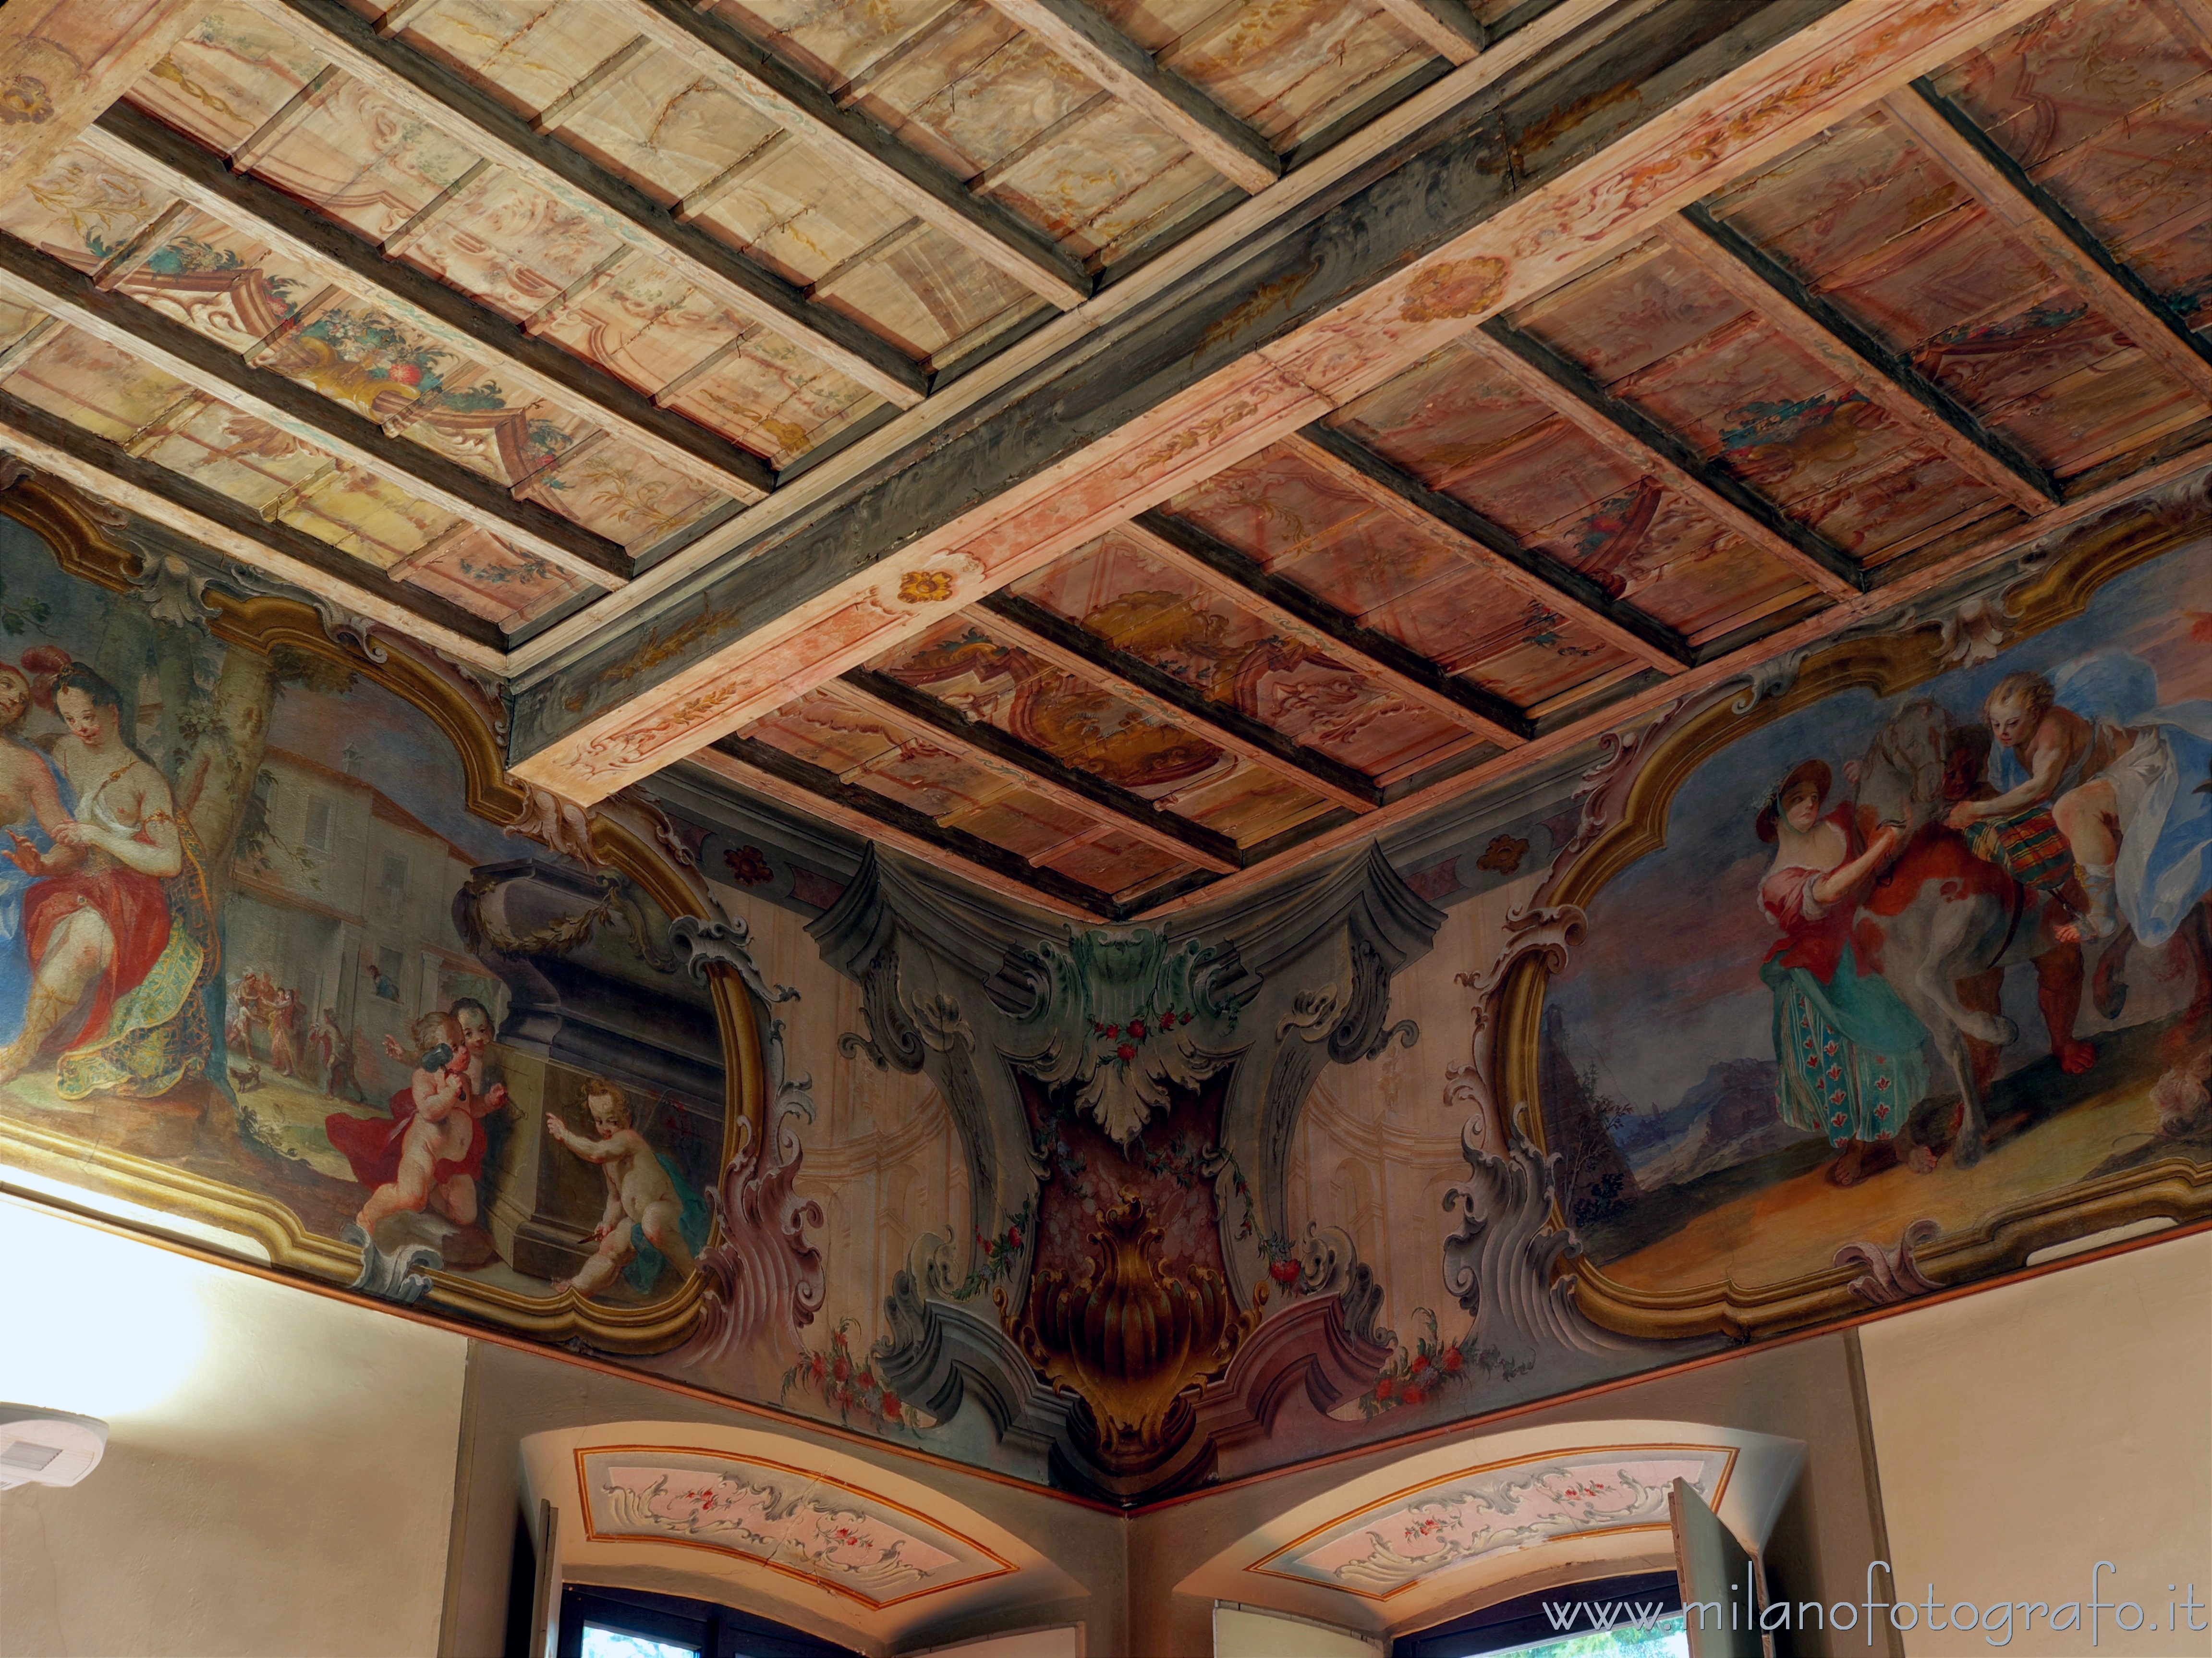 Vimercate (Monza e Brianza): Affreschi nella sala di Angelica e Medoro in Palazzo Trotti - Vimercate (Monza e Brianza)